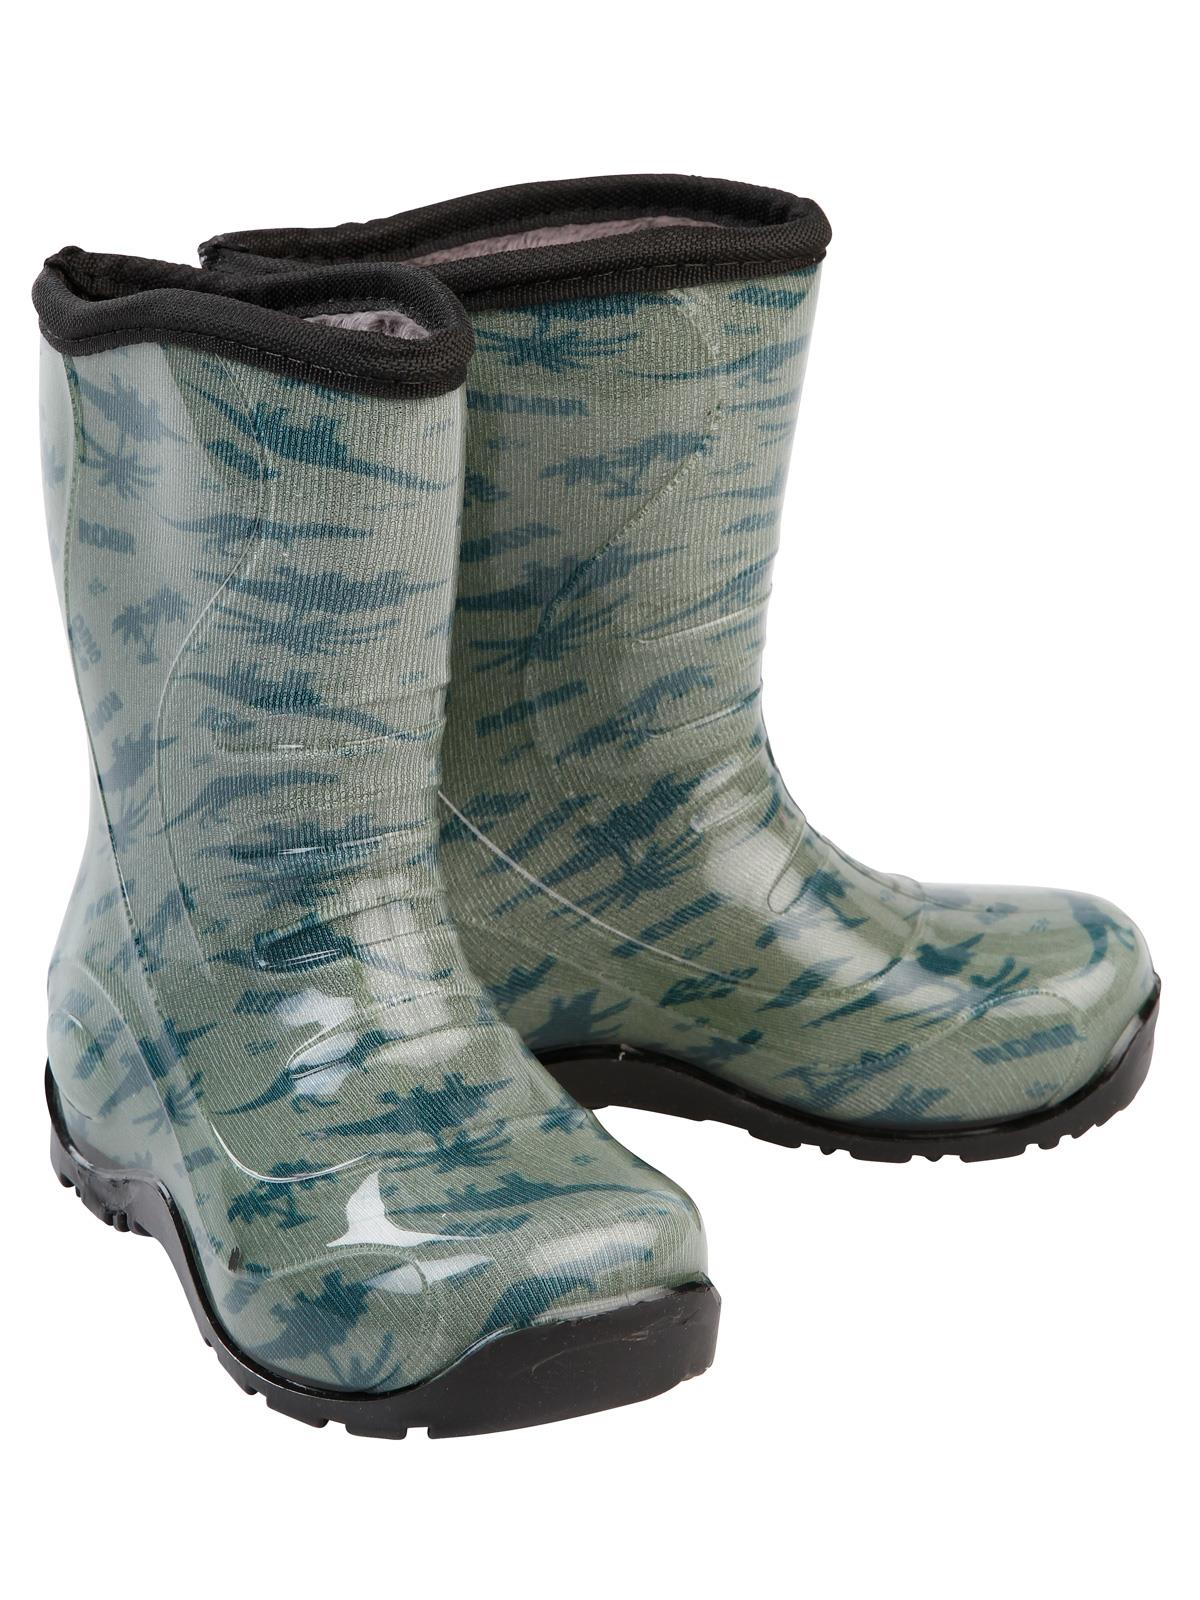 Boots Erkek Çocuk Dinazor Desenli Yağmur Çizmesi 30-34 Numara Haki